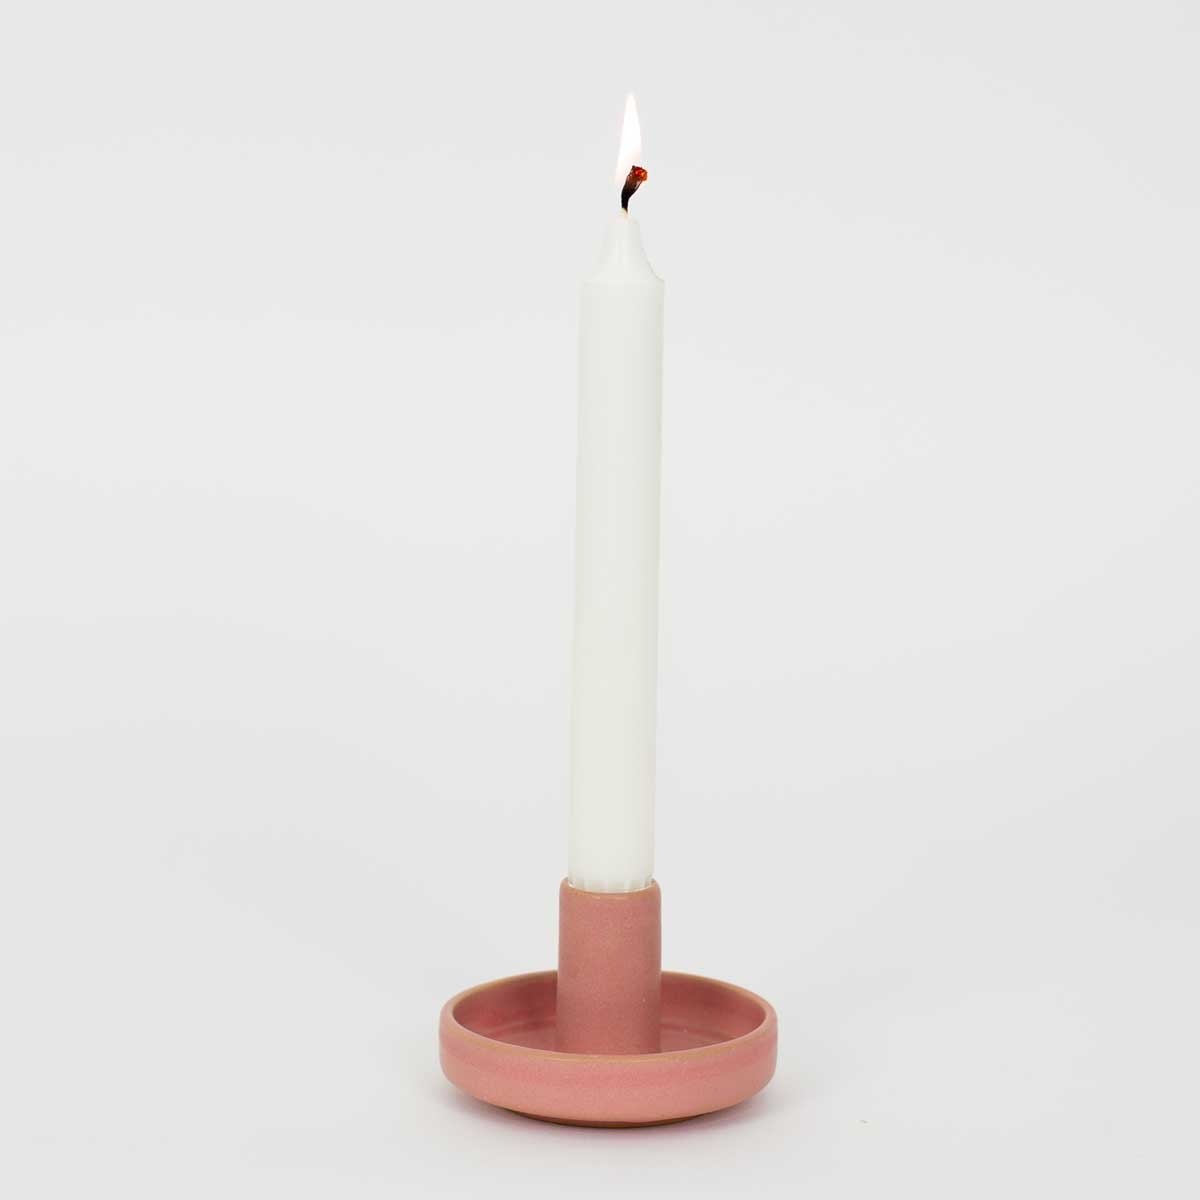 HERMES Candleholder, pink